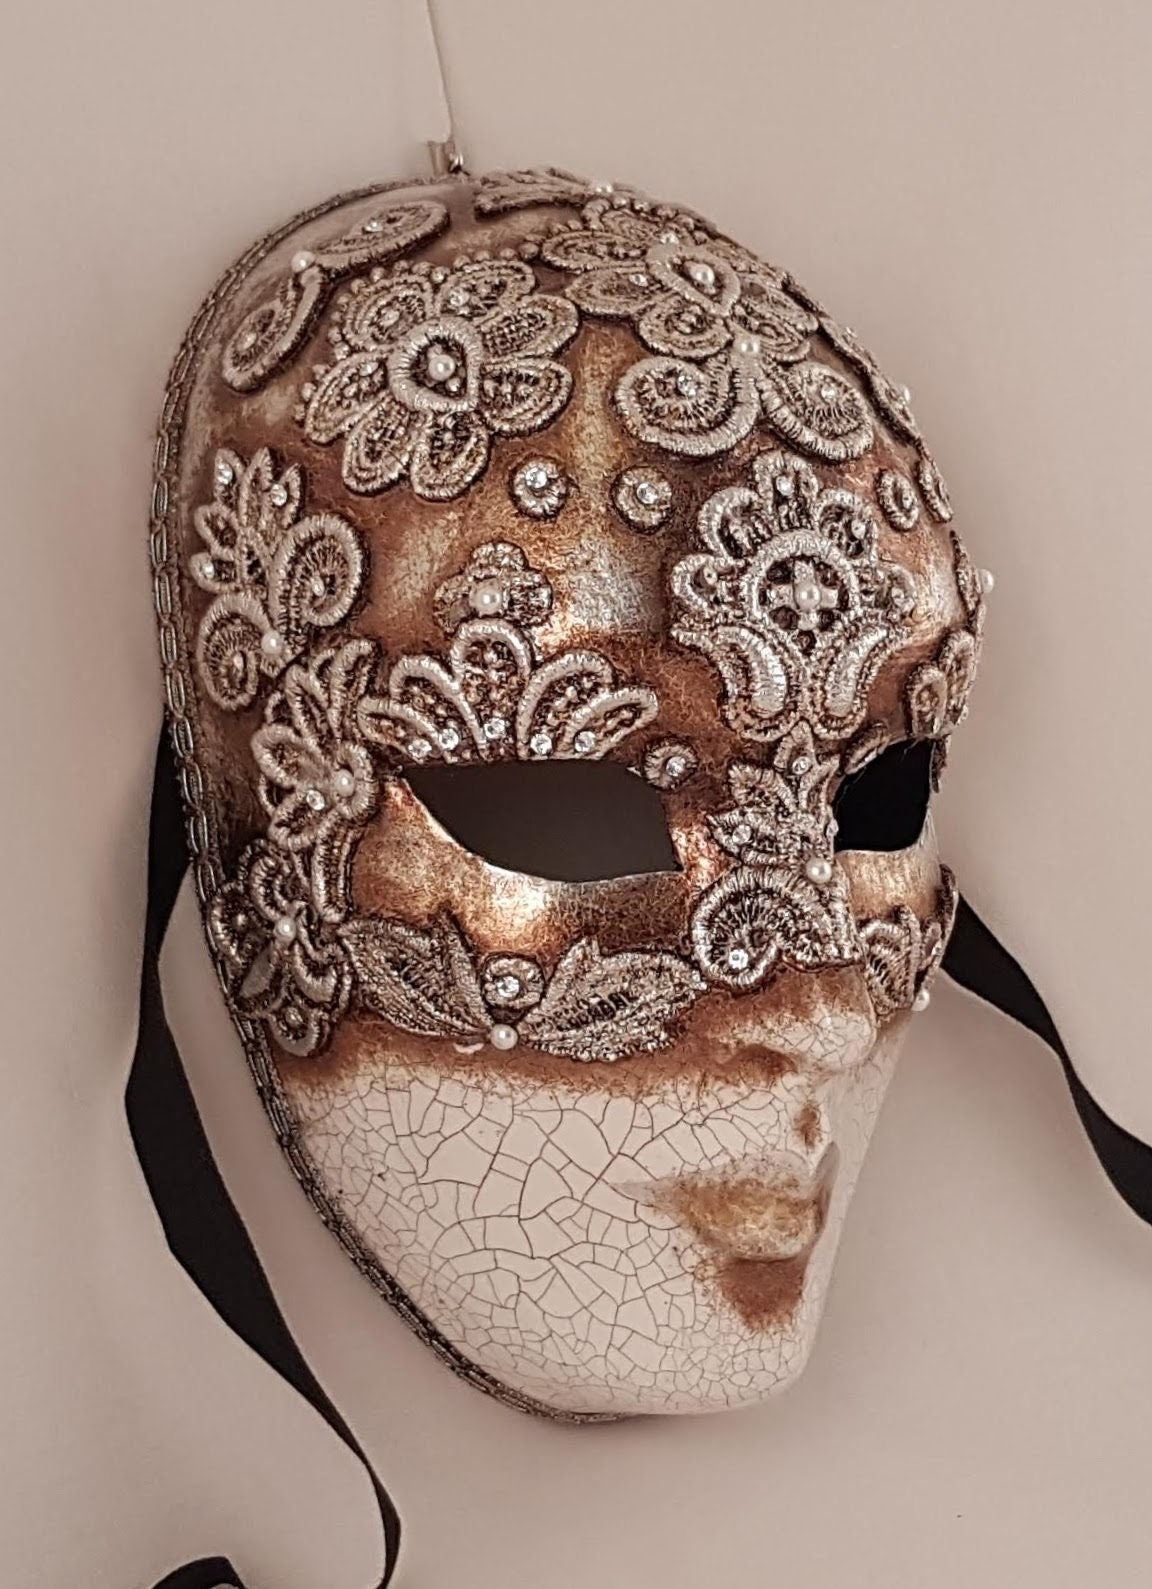 Eyes wide shut style venetian masks Unique piece